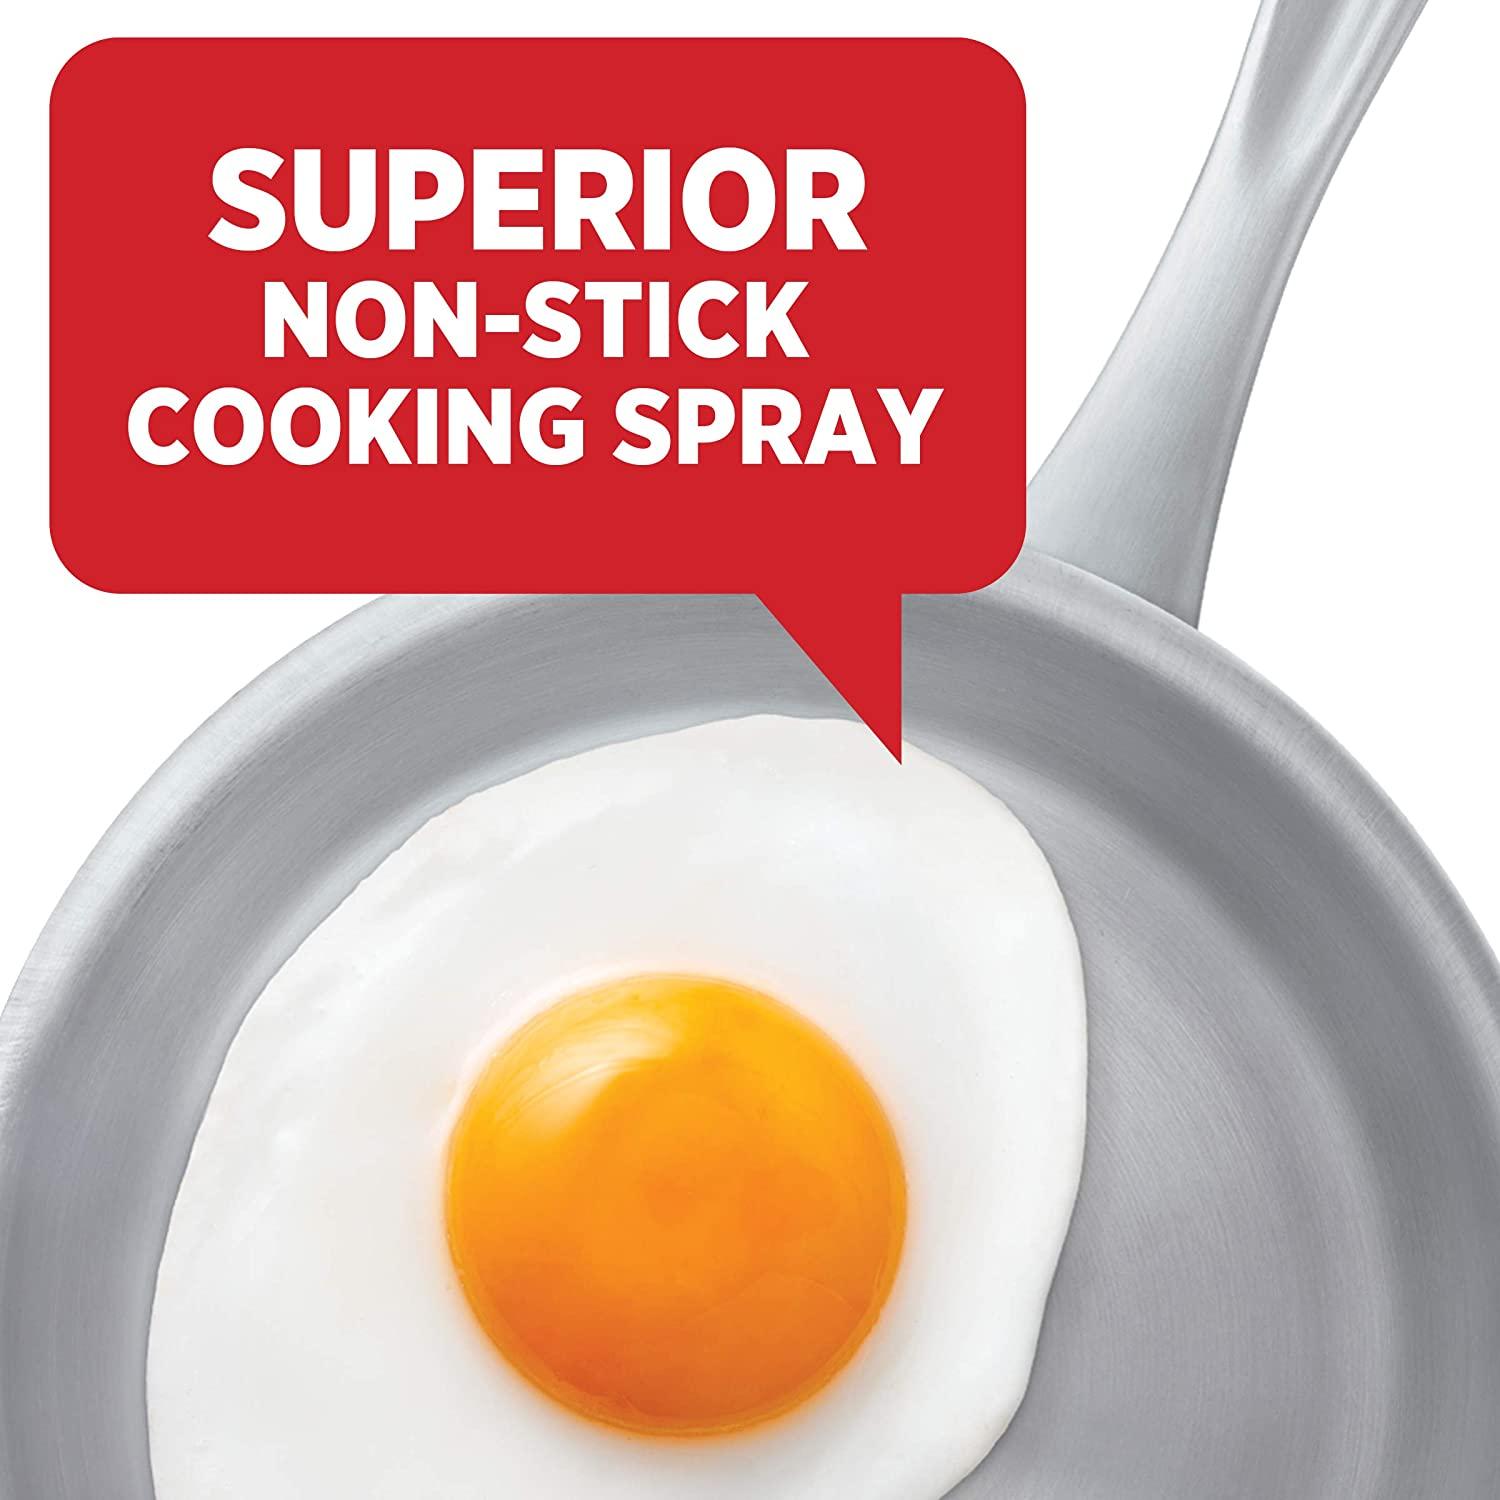 PAM Non Stick Original Cooking Spray, 6 oz